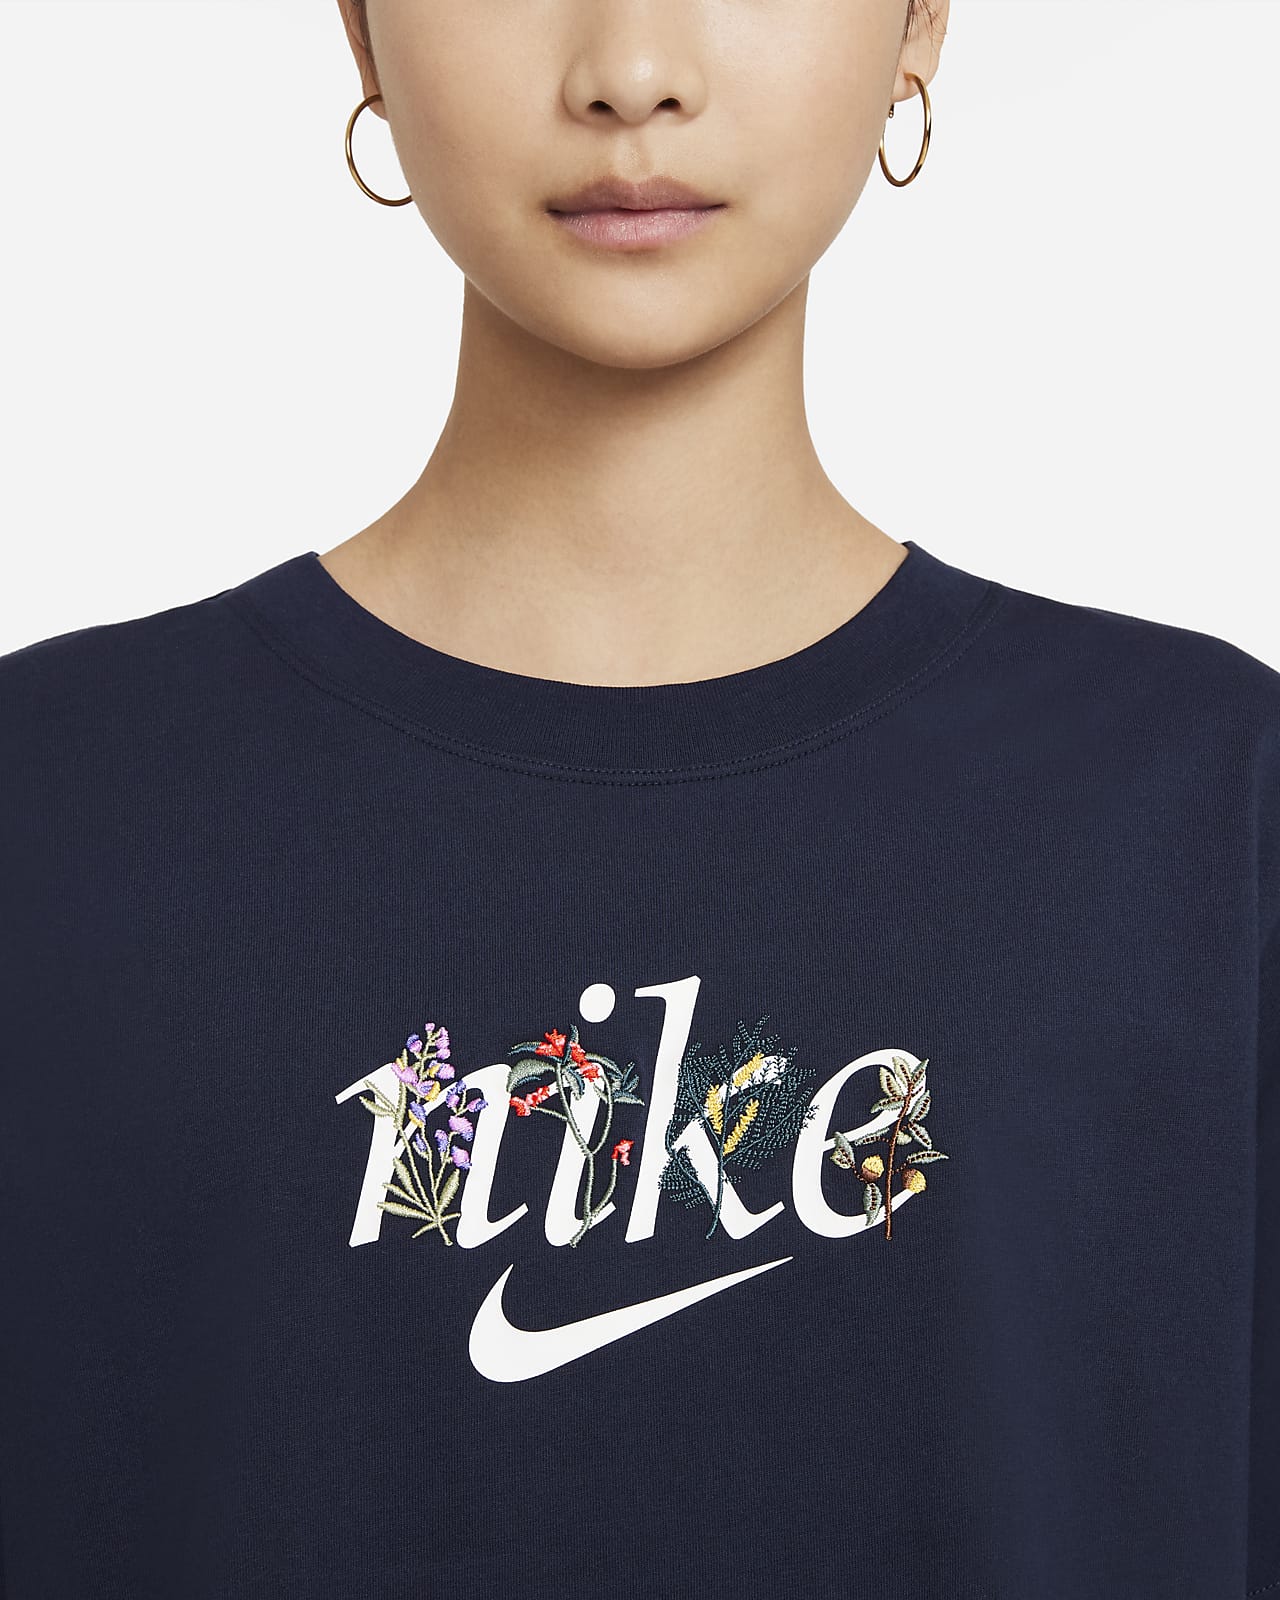 Nike公式 ナイキ スポーツウェア ウィメンズ Tシャツ オンラインストア 通販サイト